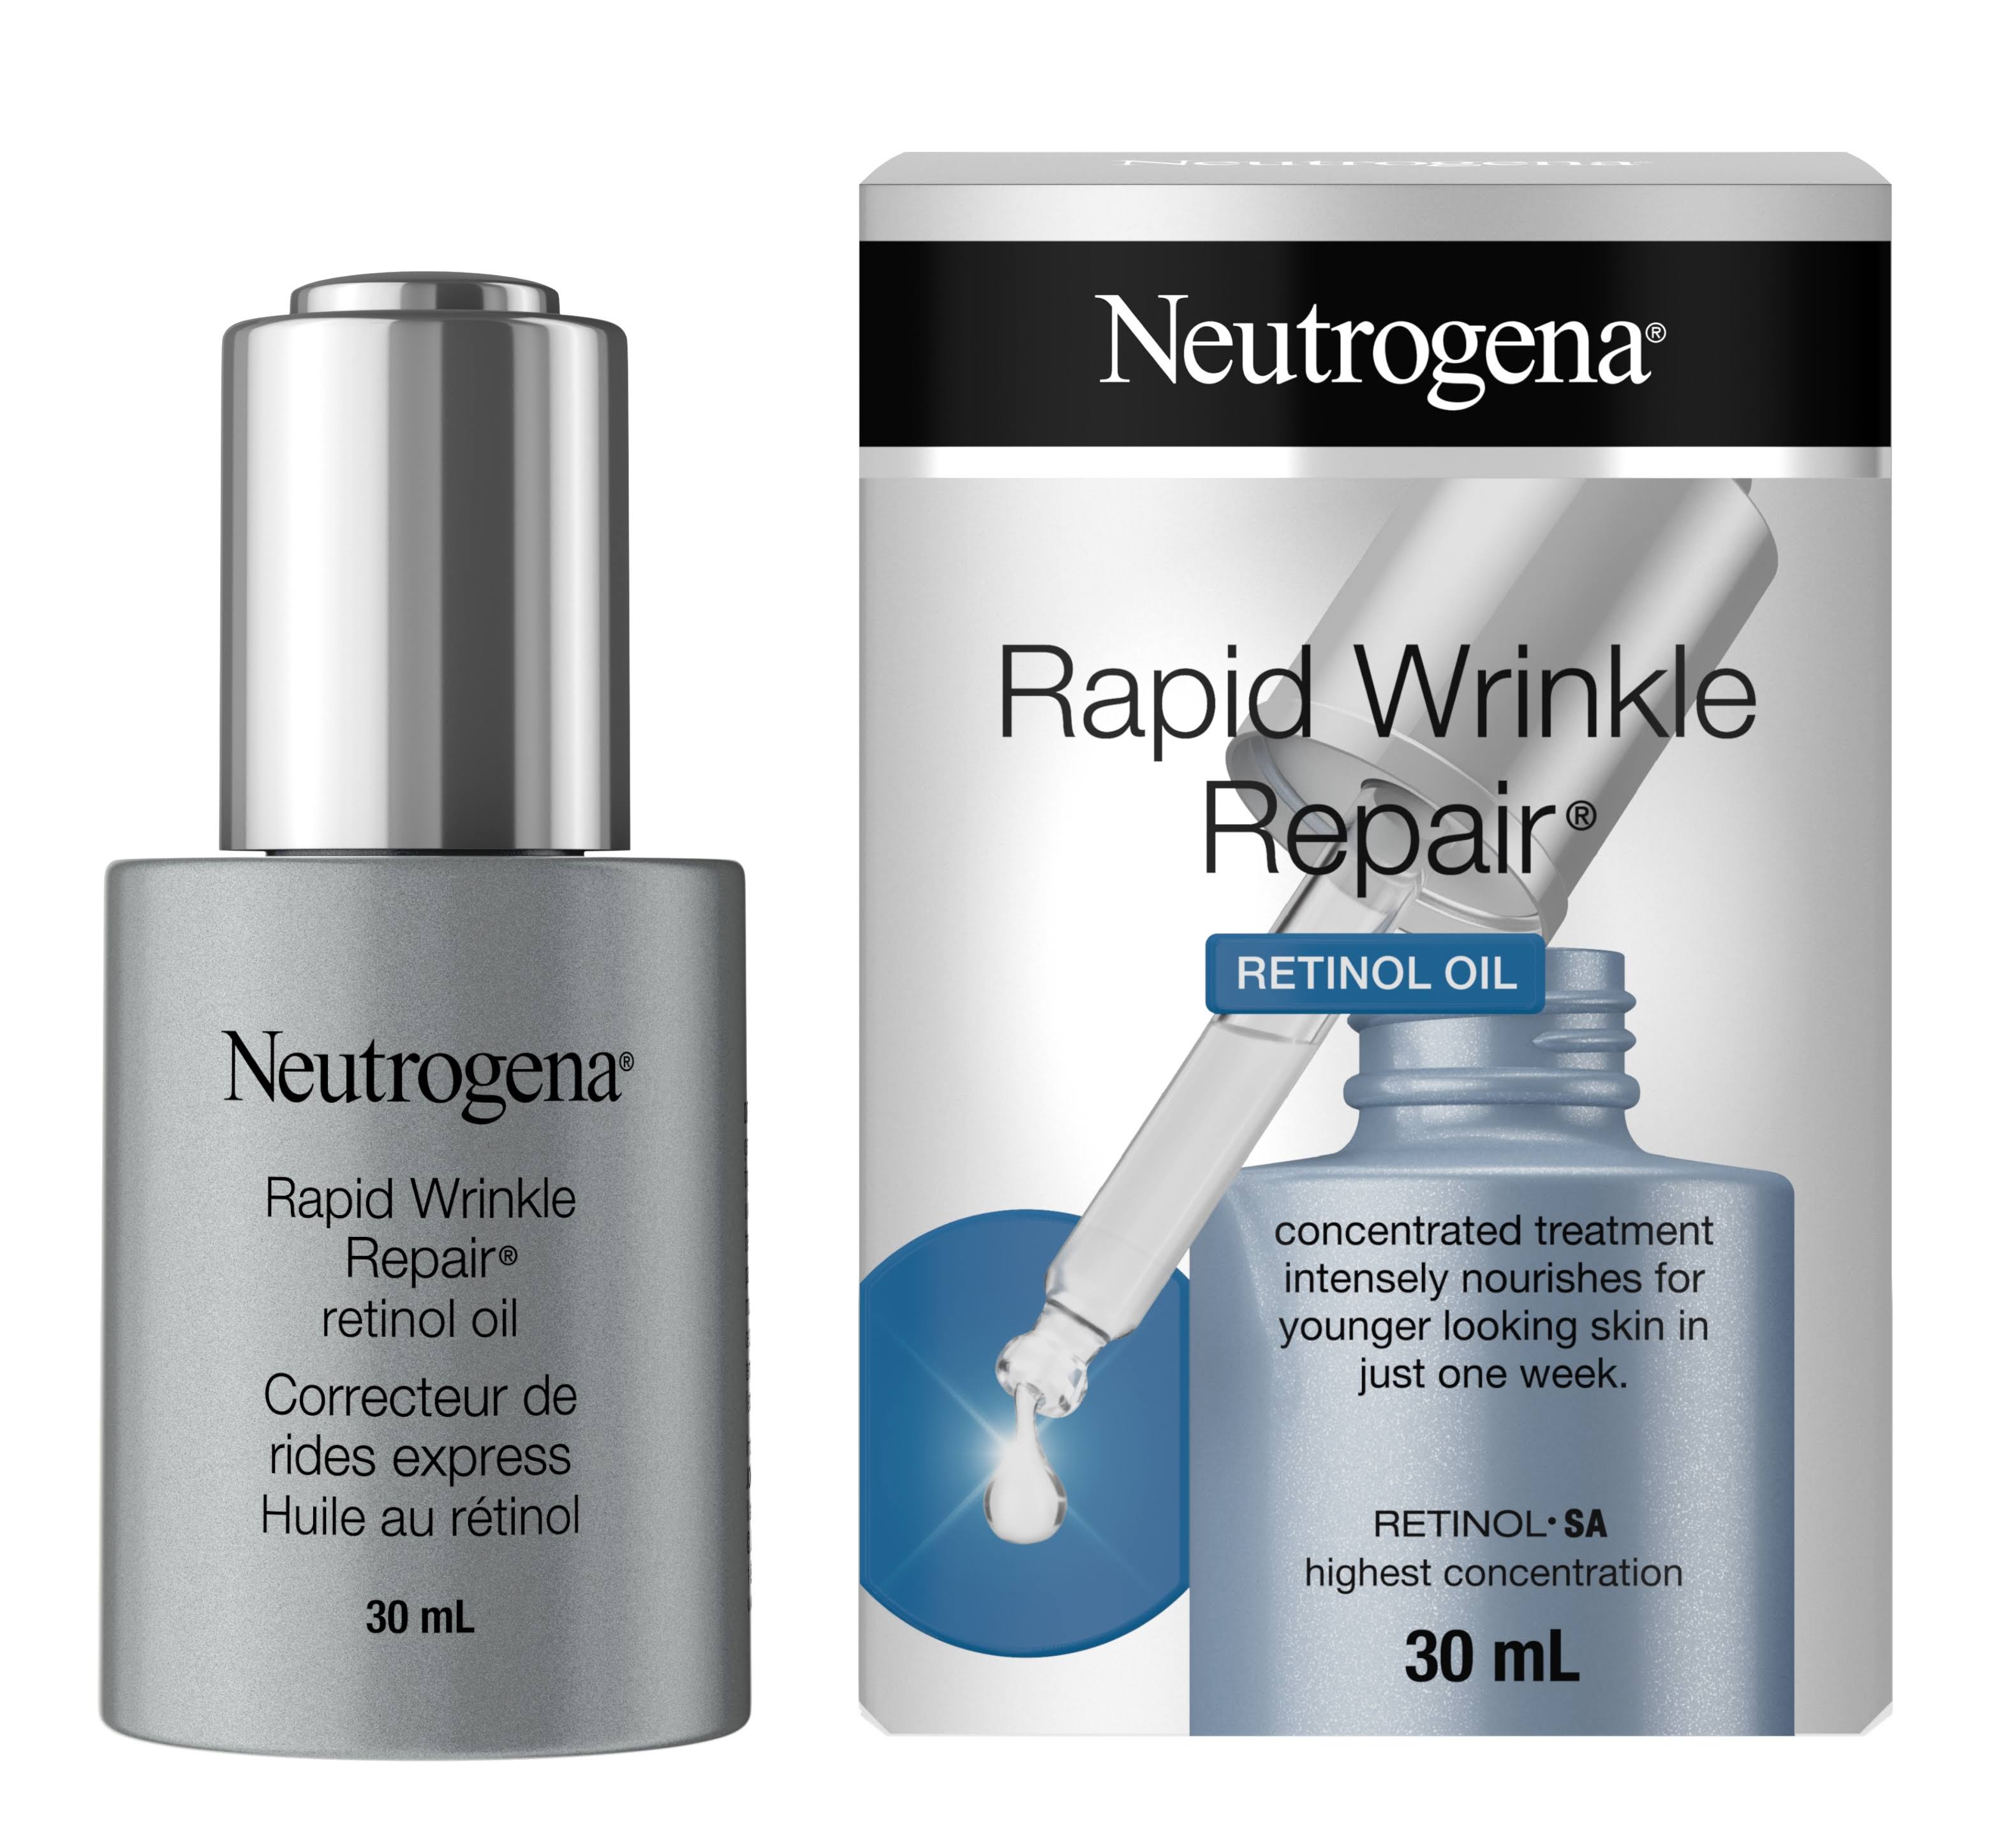 Neutrogena Rapid Wrinkle Repair Retinol Oil - 30ml